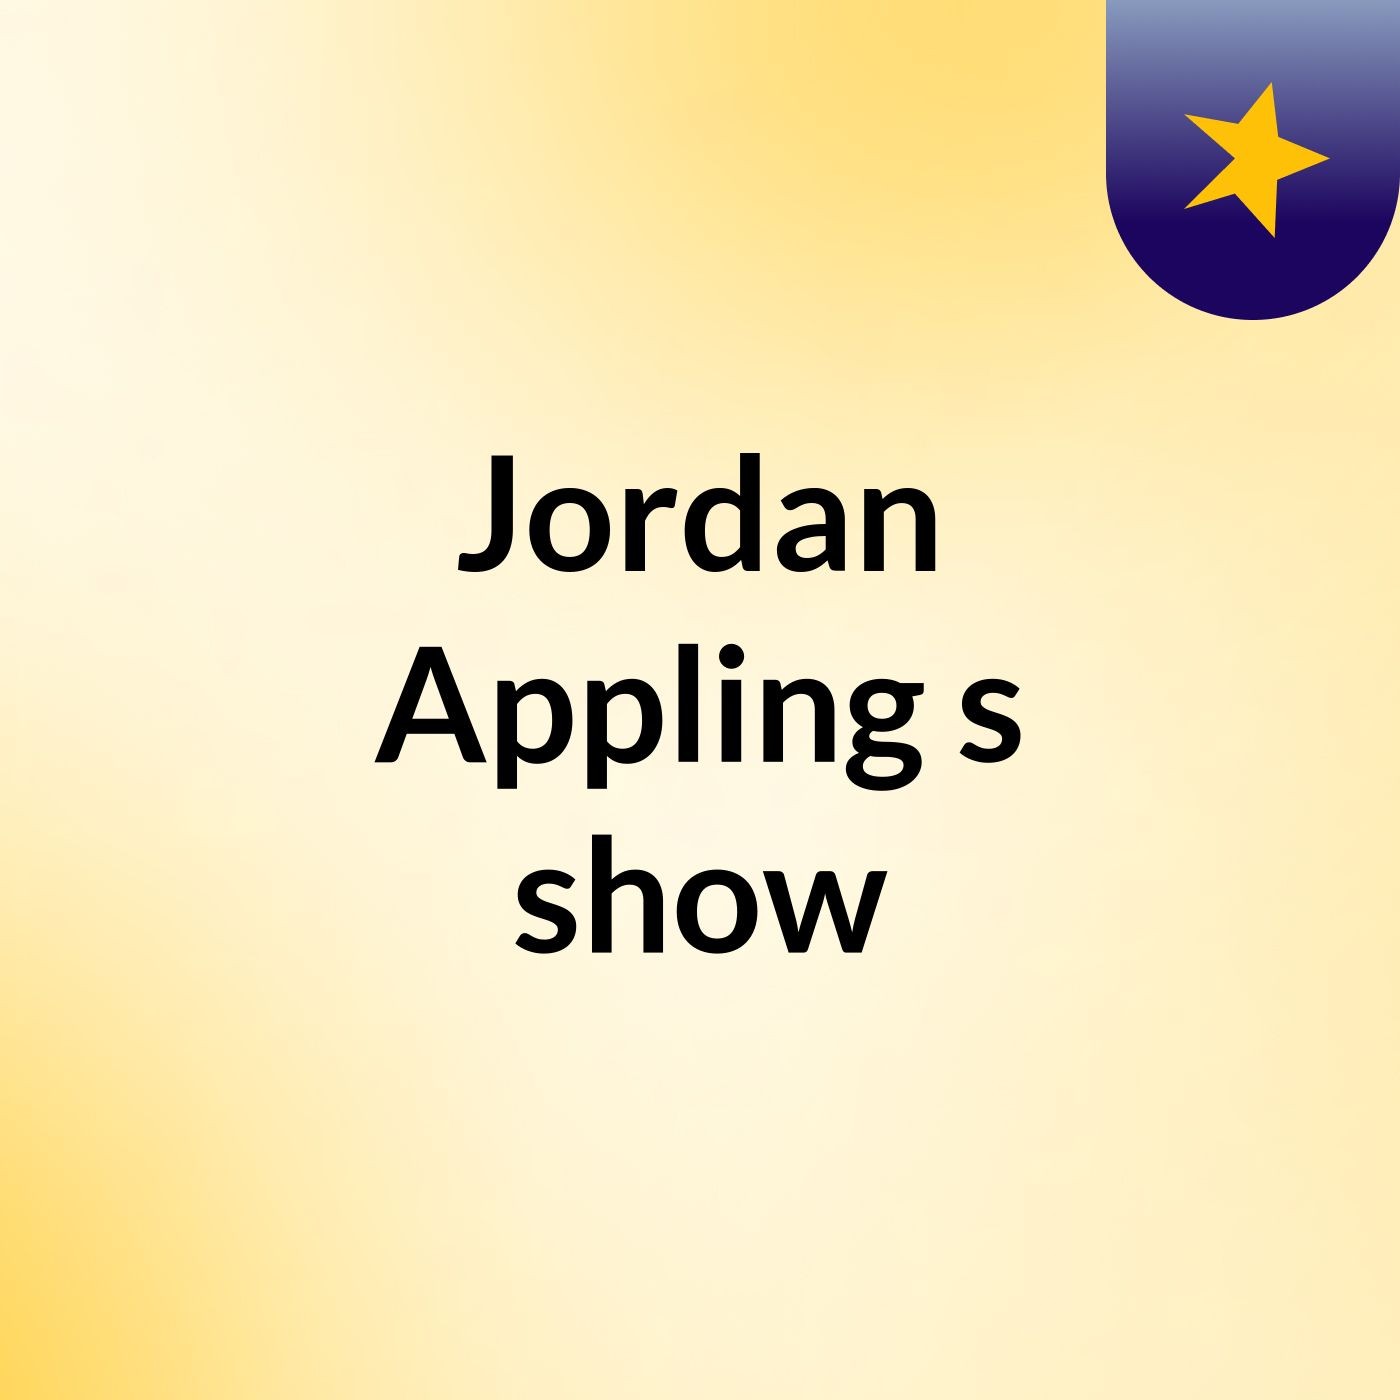 Jordan Appling's show